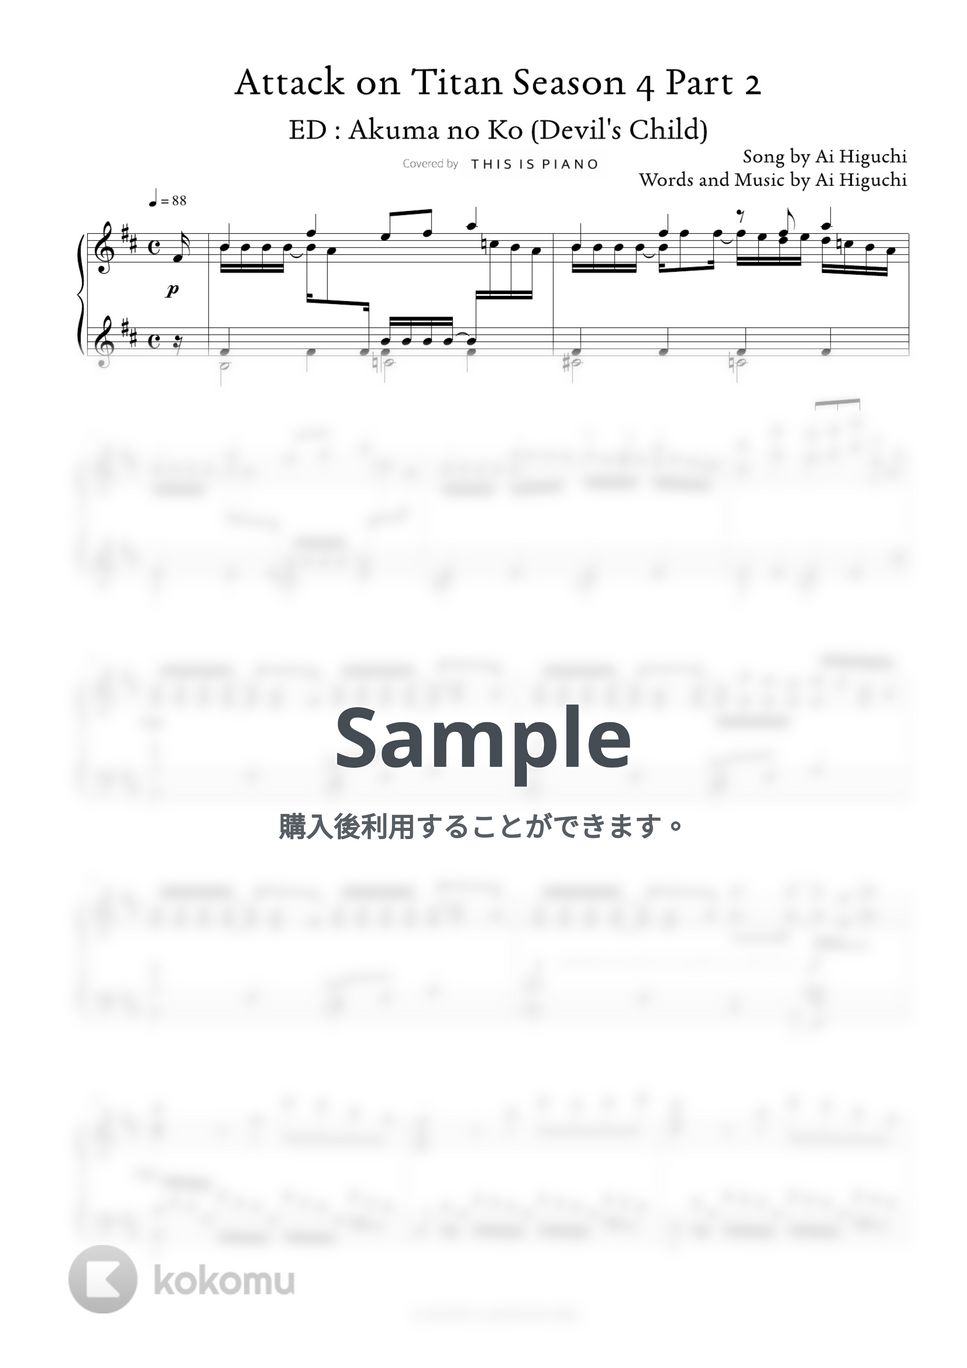 進撃の巨人 - 悪魔の子 (４期エンディング曲) by THIS IS PIANO